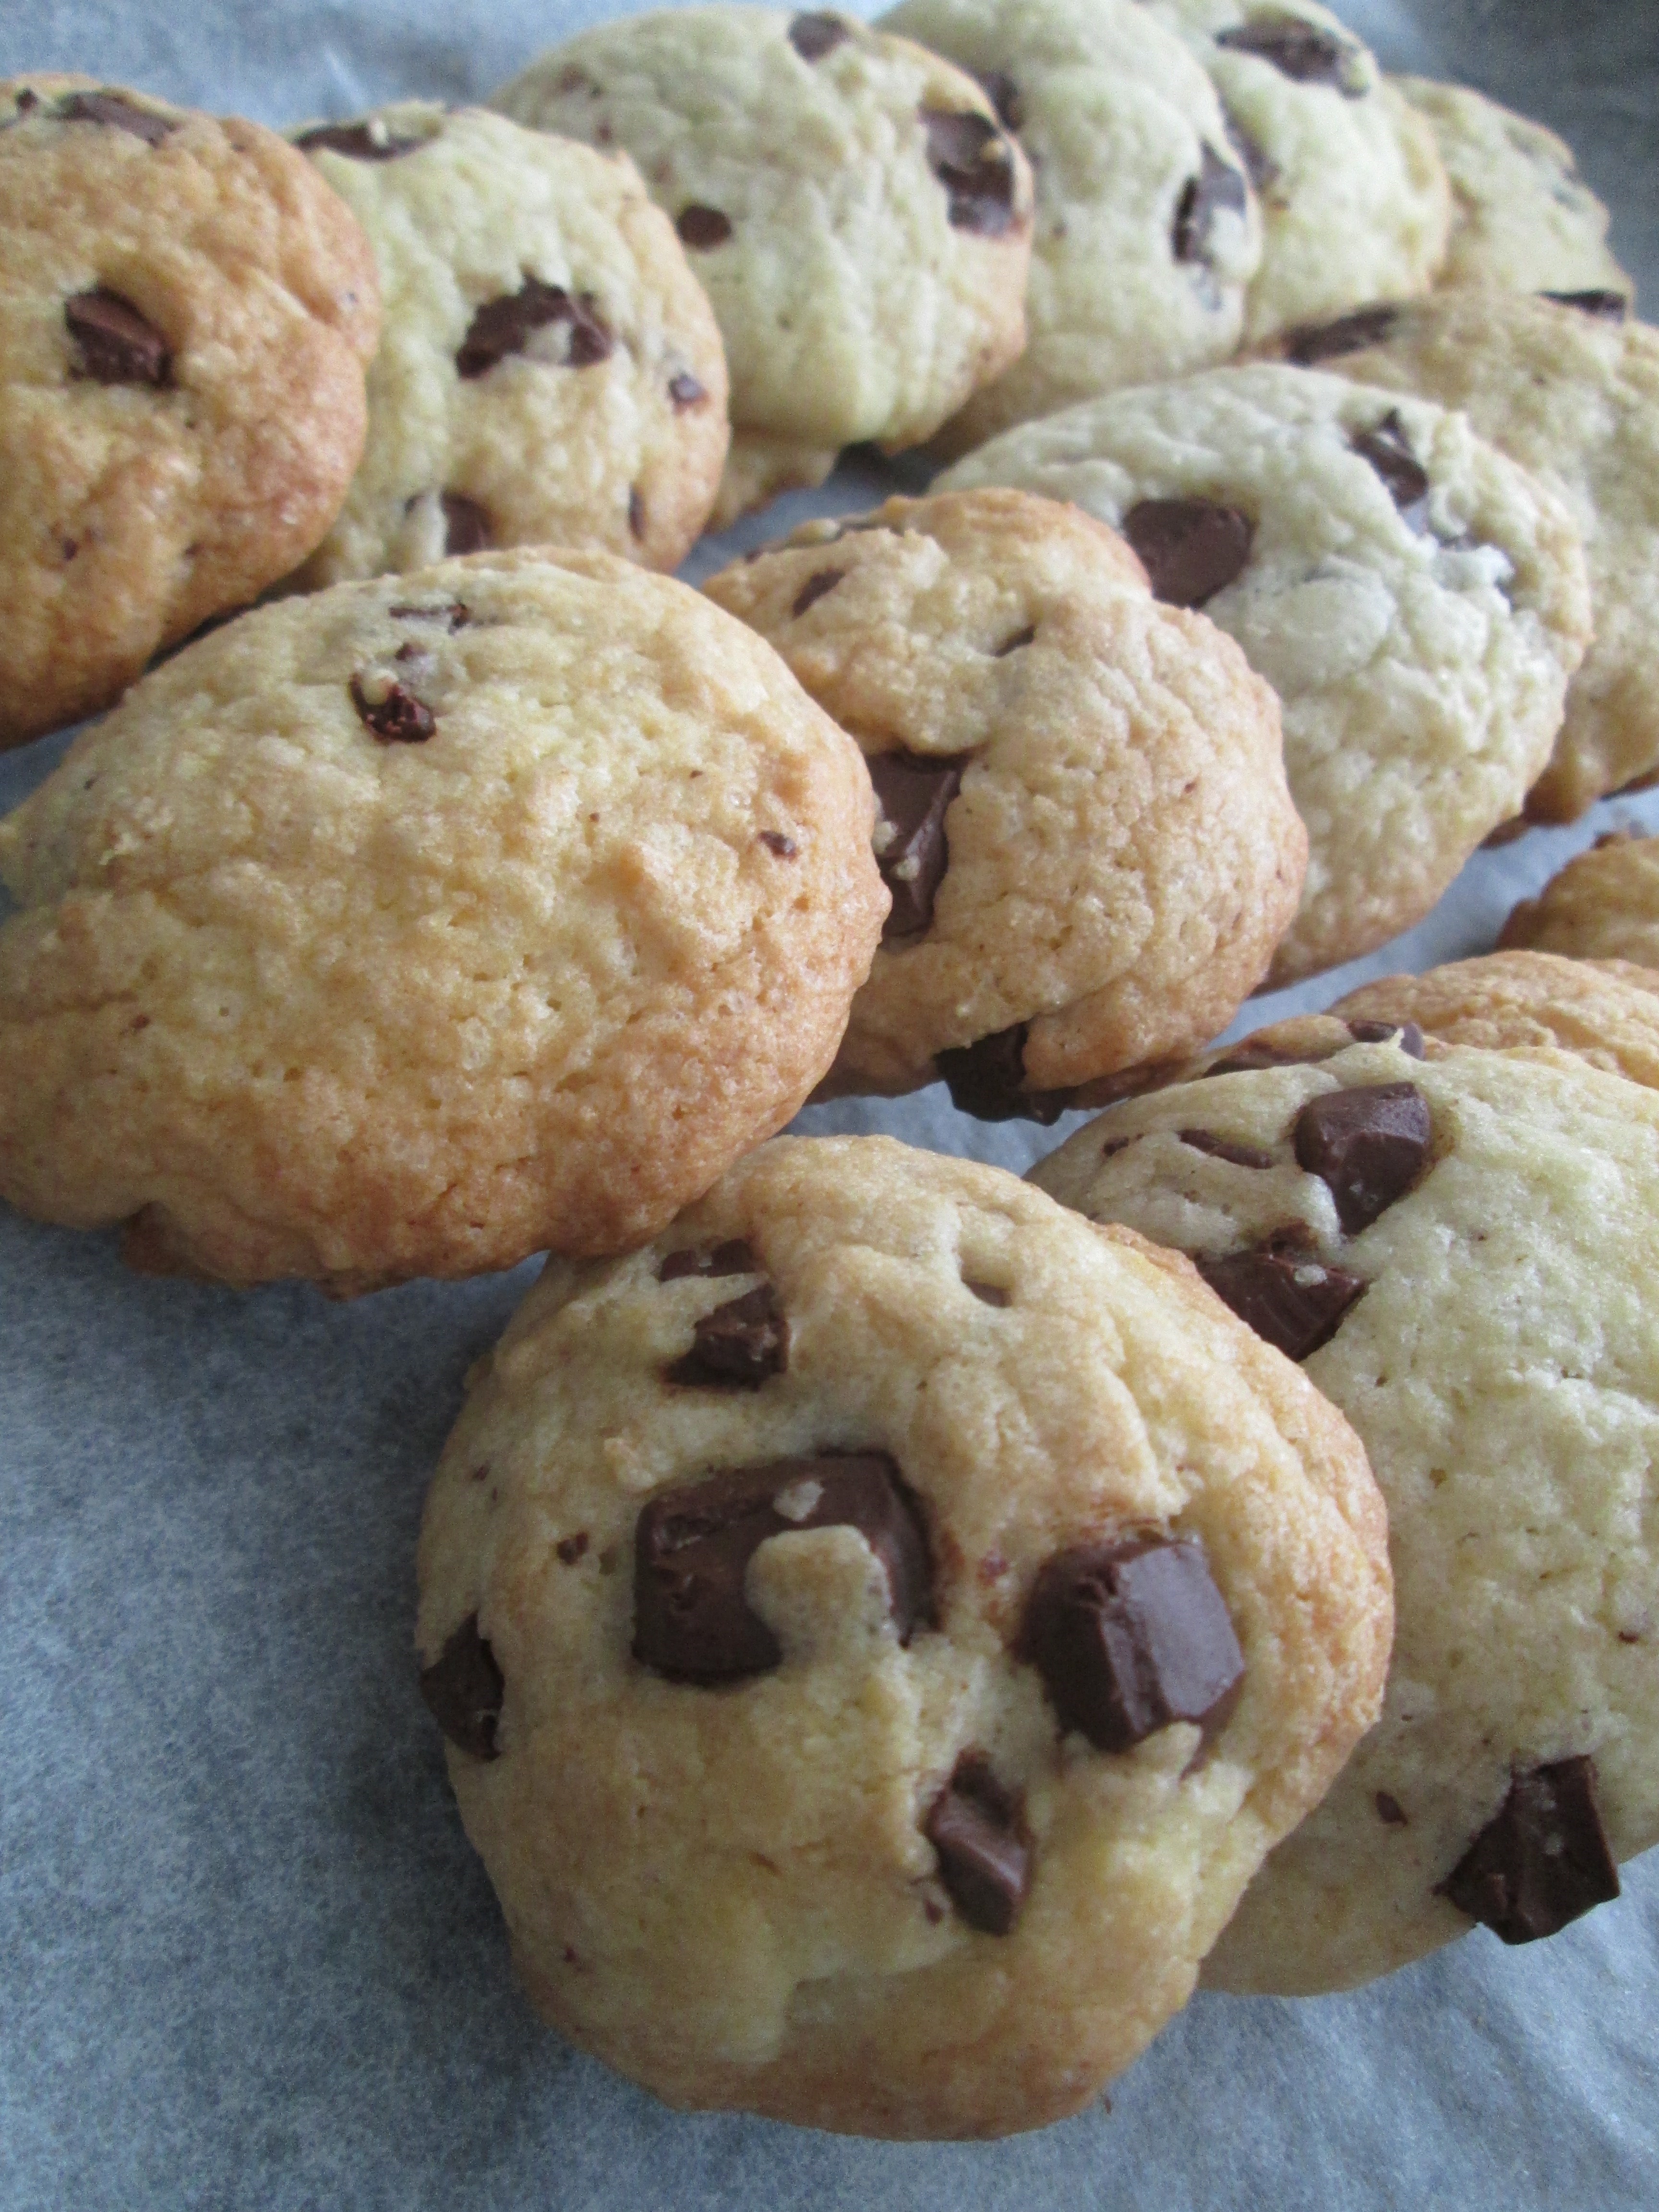 Американское печенье с шоколадной крошкой (Сhocolate chip cookies)